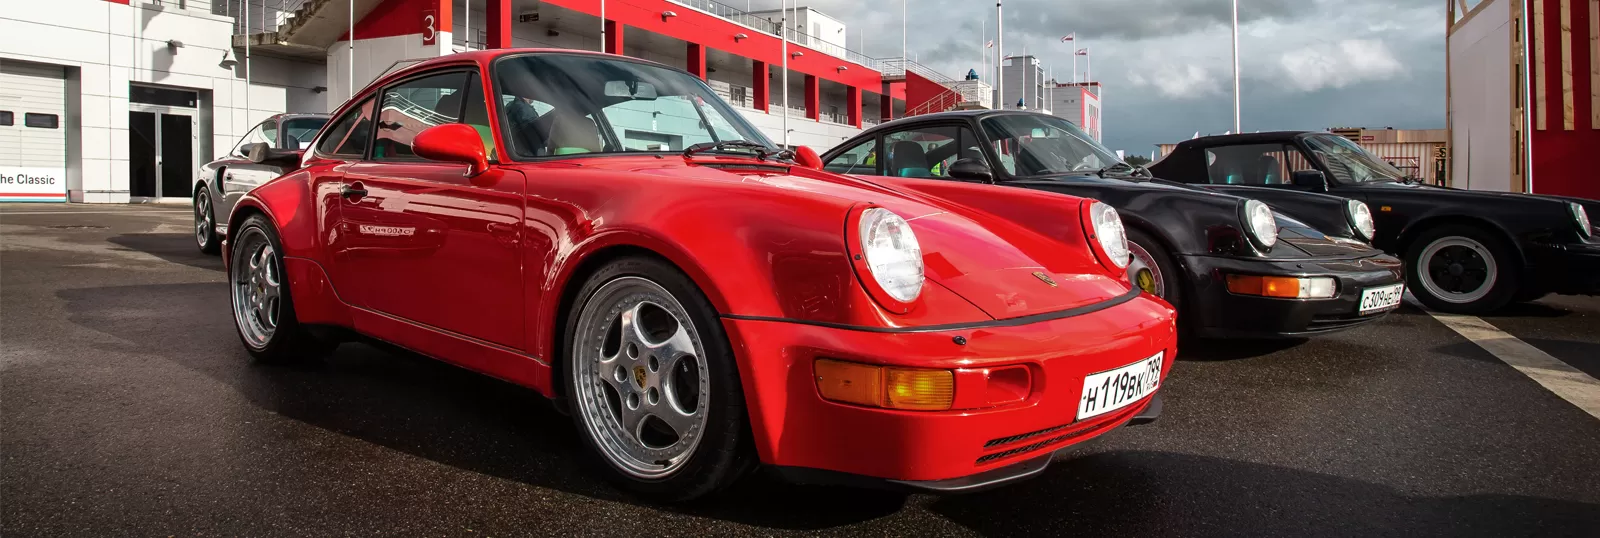 Юбилей спортивных автомобилей Porsche: 70 лет вместе